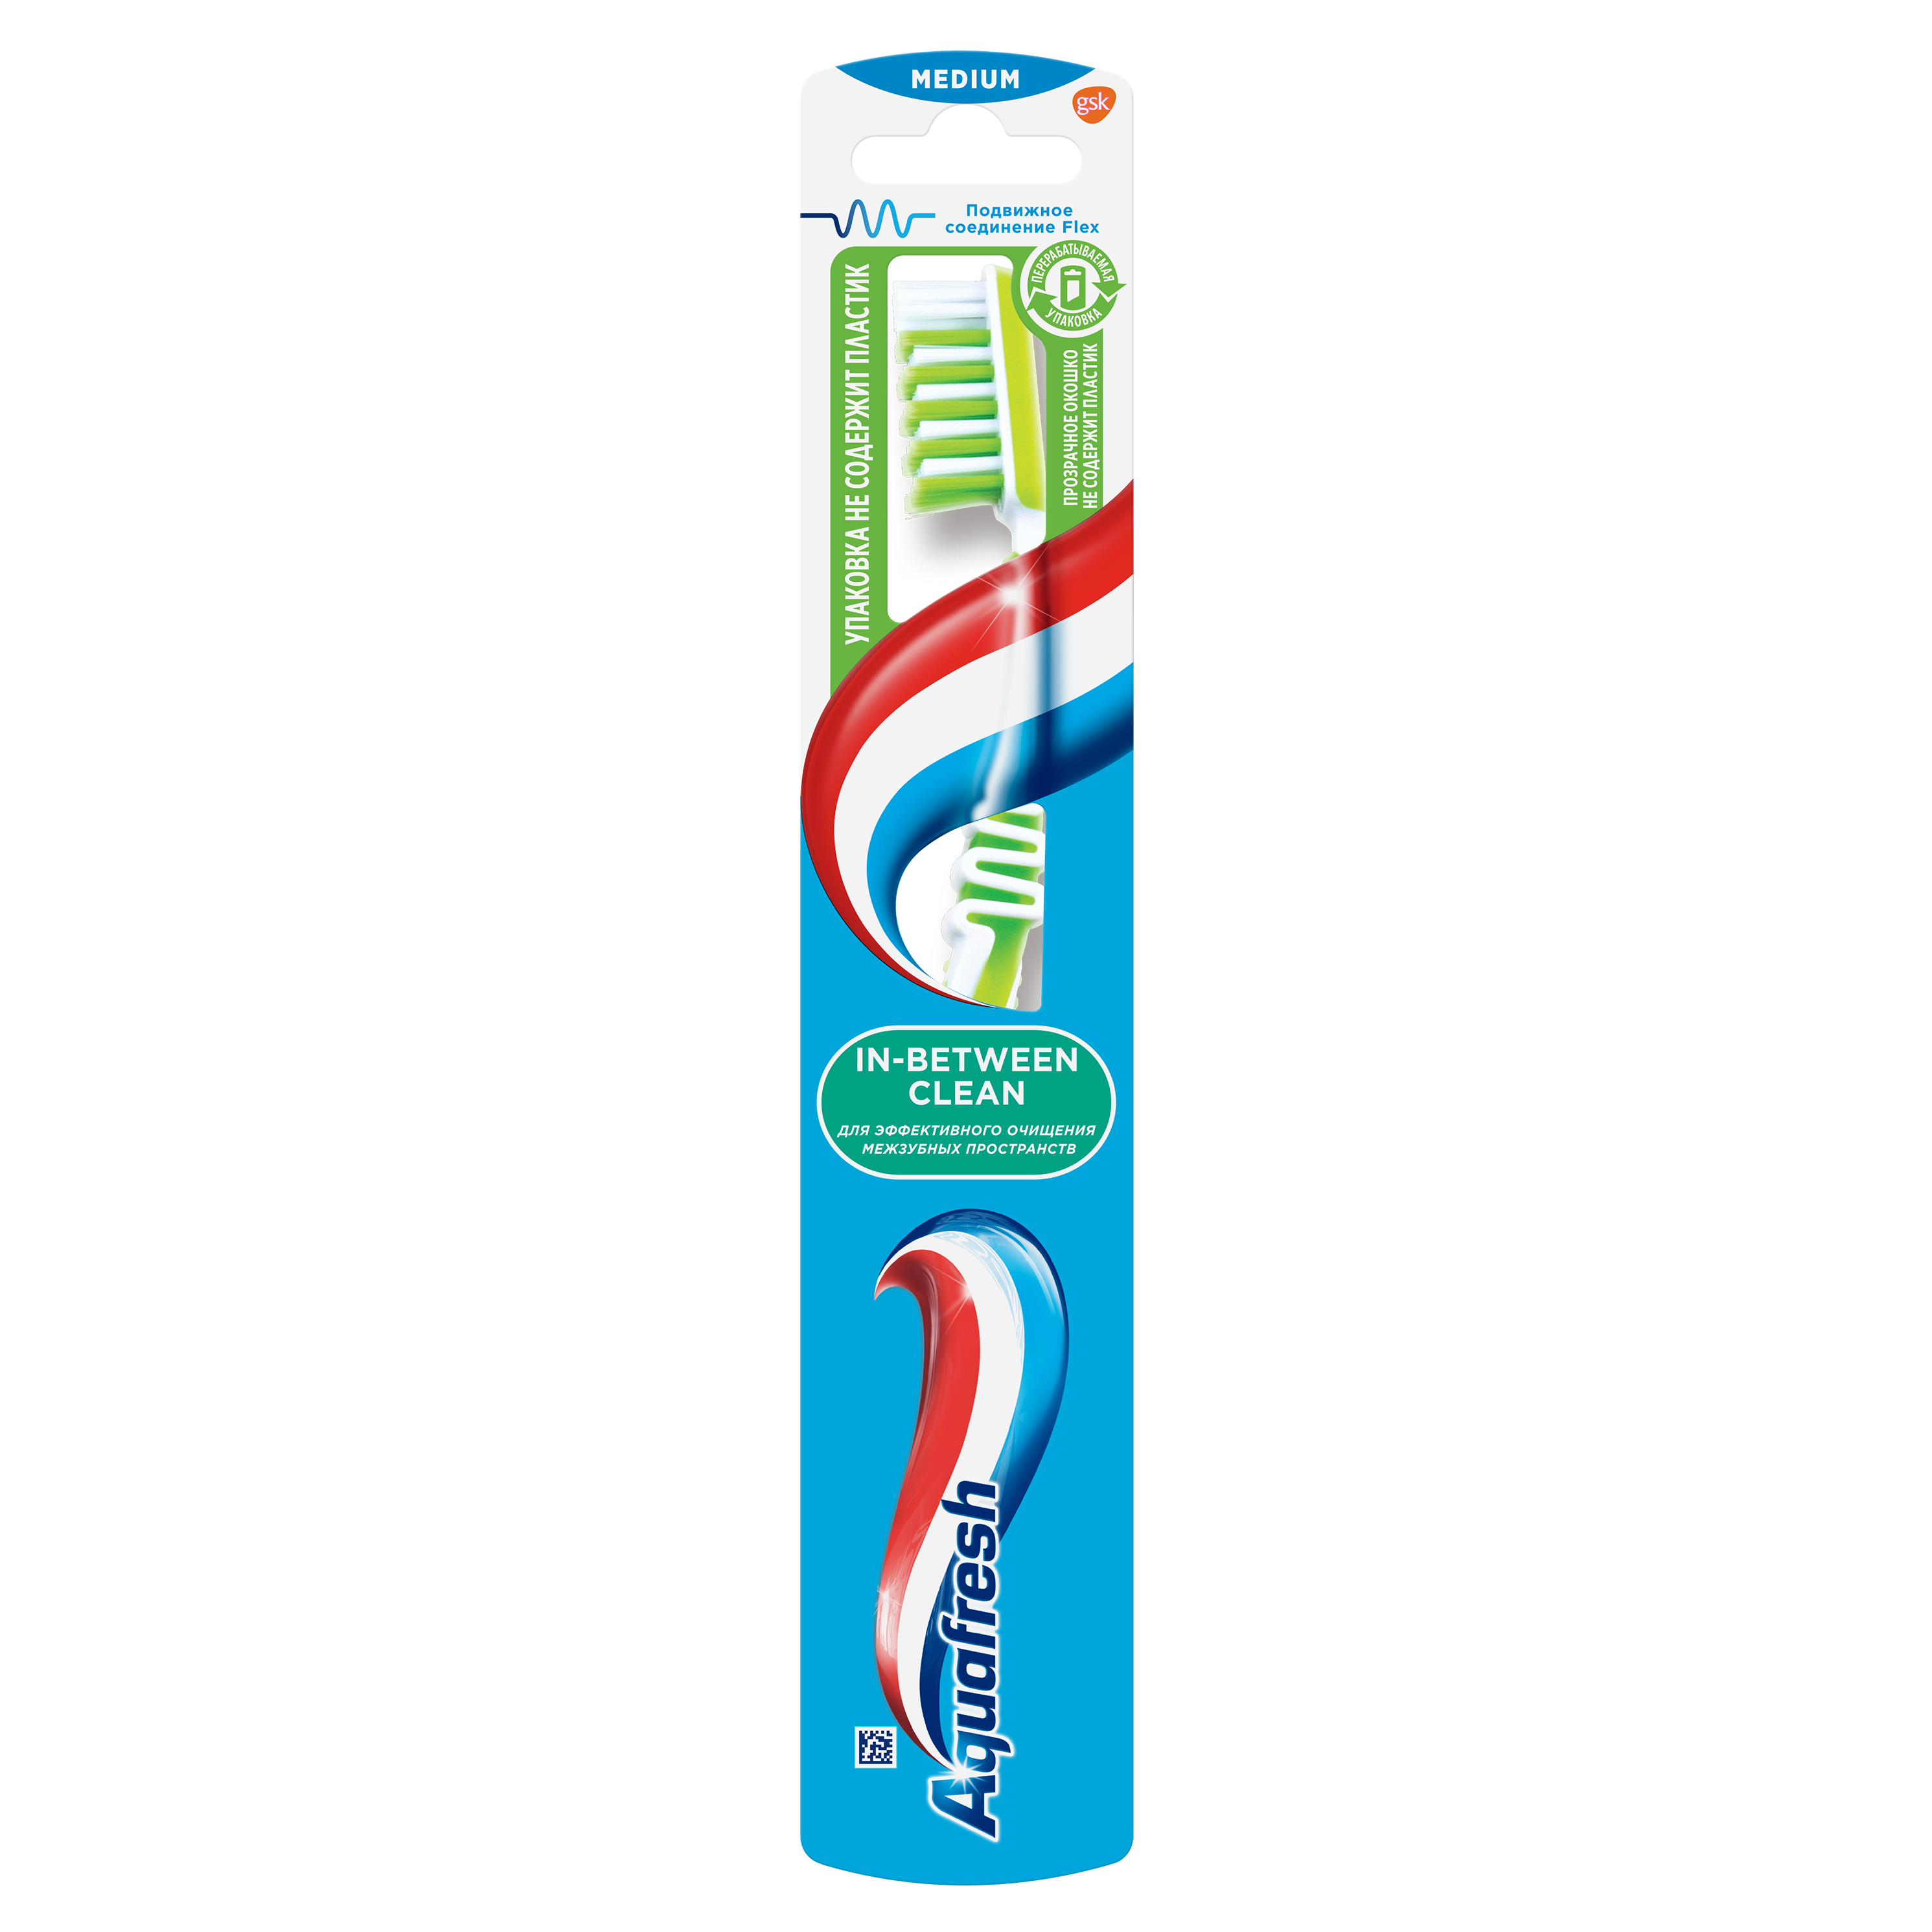 Зубная щетка Aquafresh In-between Clean для очищения зубов и межзубных промежутков,средней жесткости, в ассортименте jordan зубная щетка jordan green clean soft мягкая